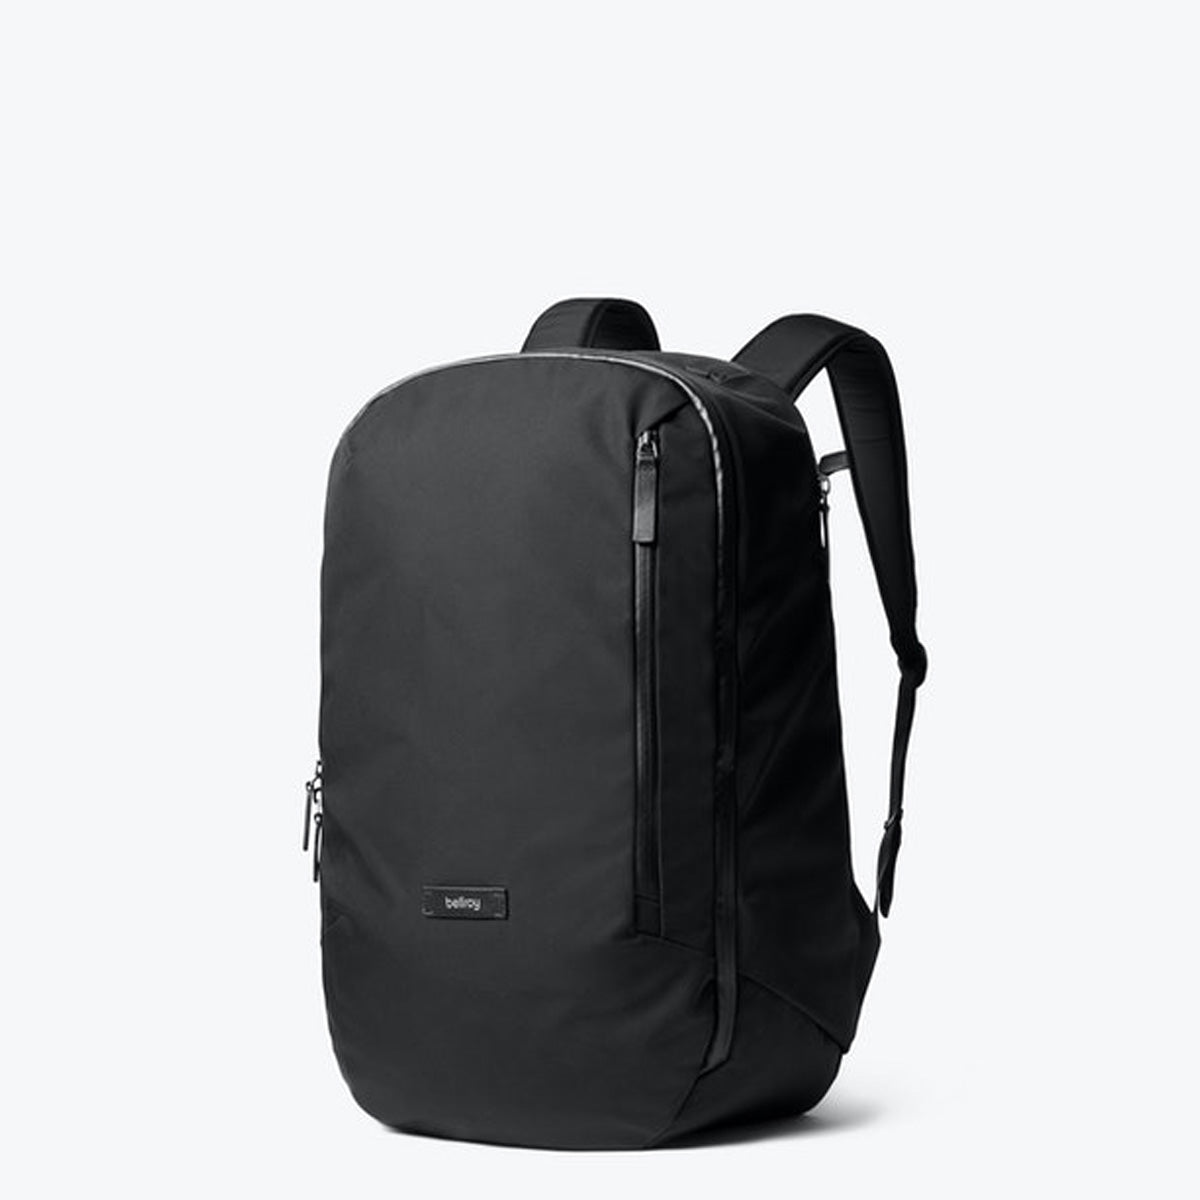 Bellroy Transit Backpack - Black